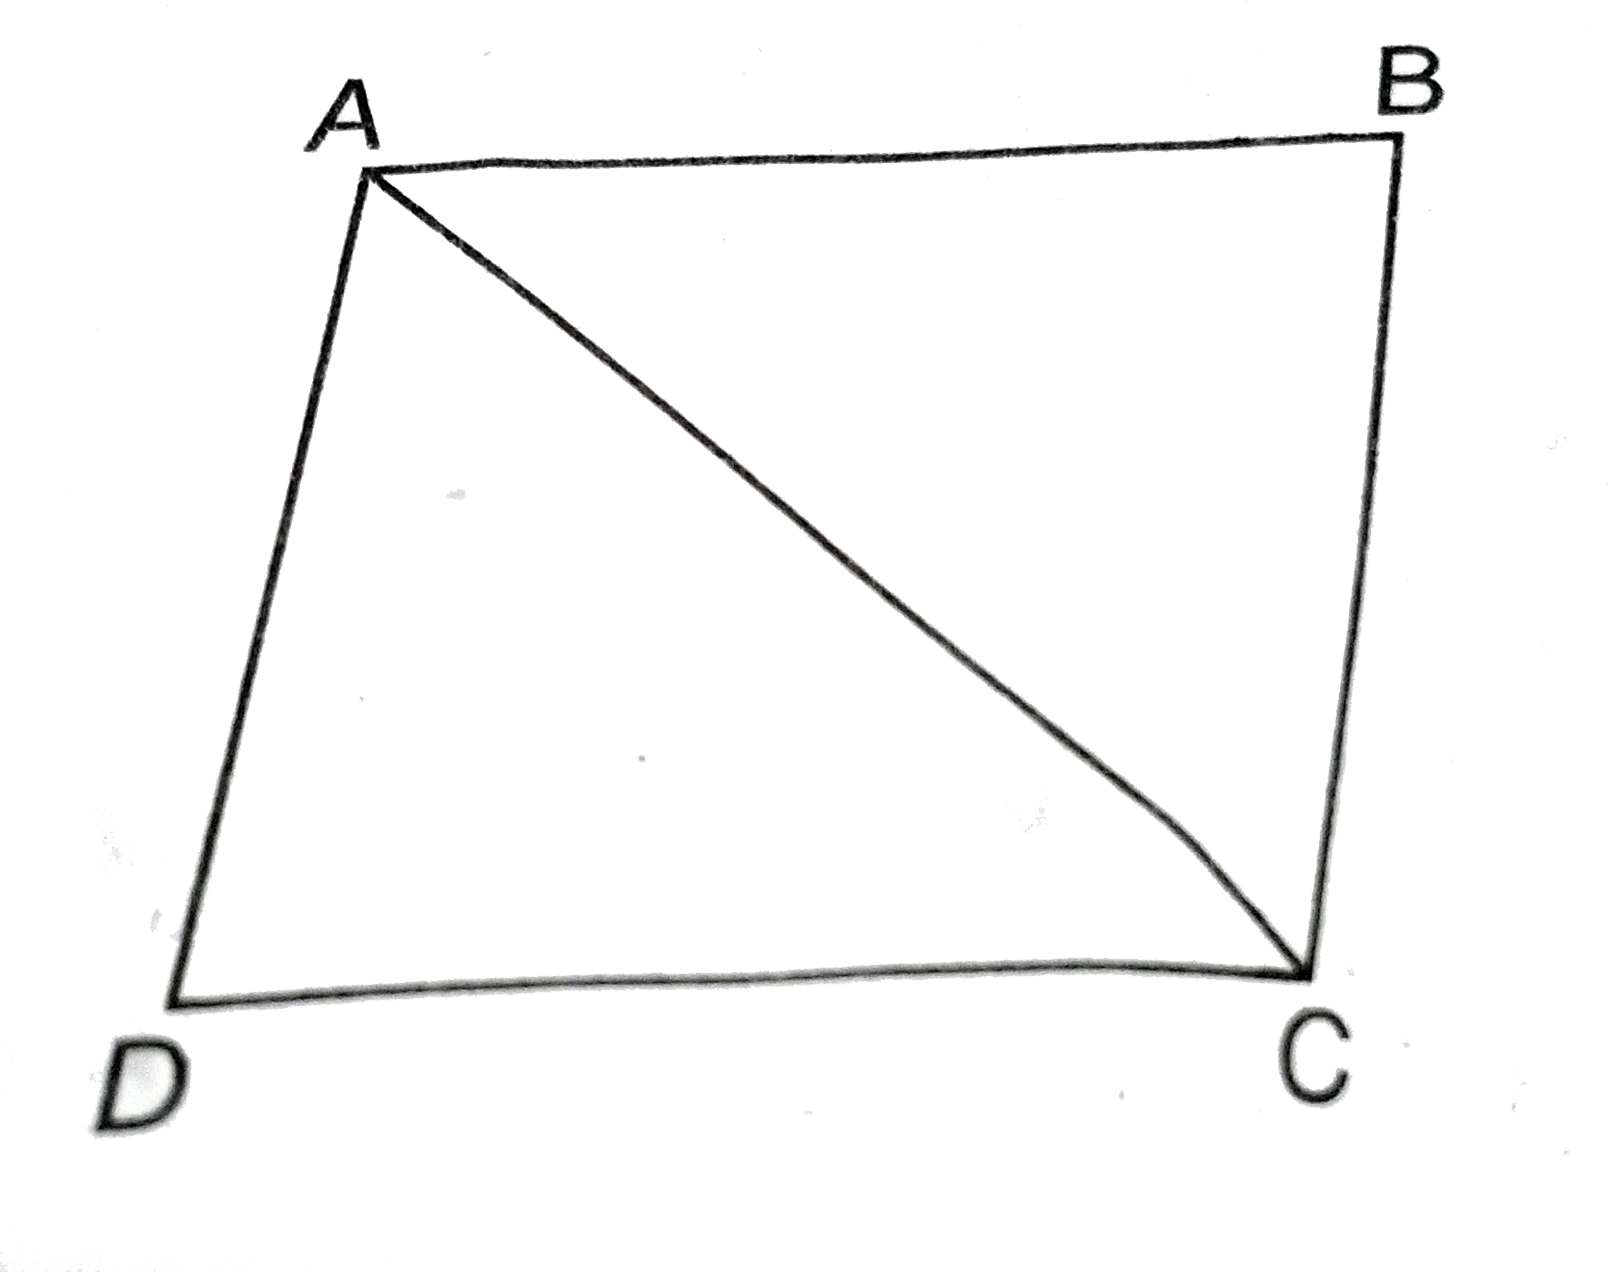 दी आकृति में, ABCD एक समान्तर चतुर्भुज है, जिसका क्षेत्रफल 60